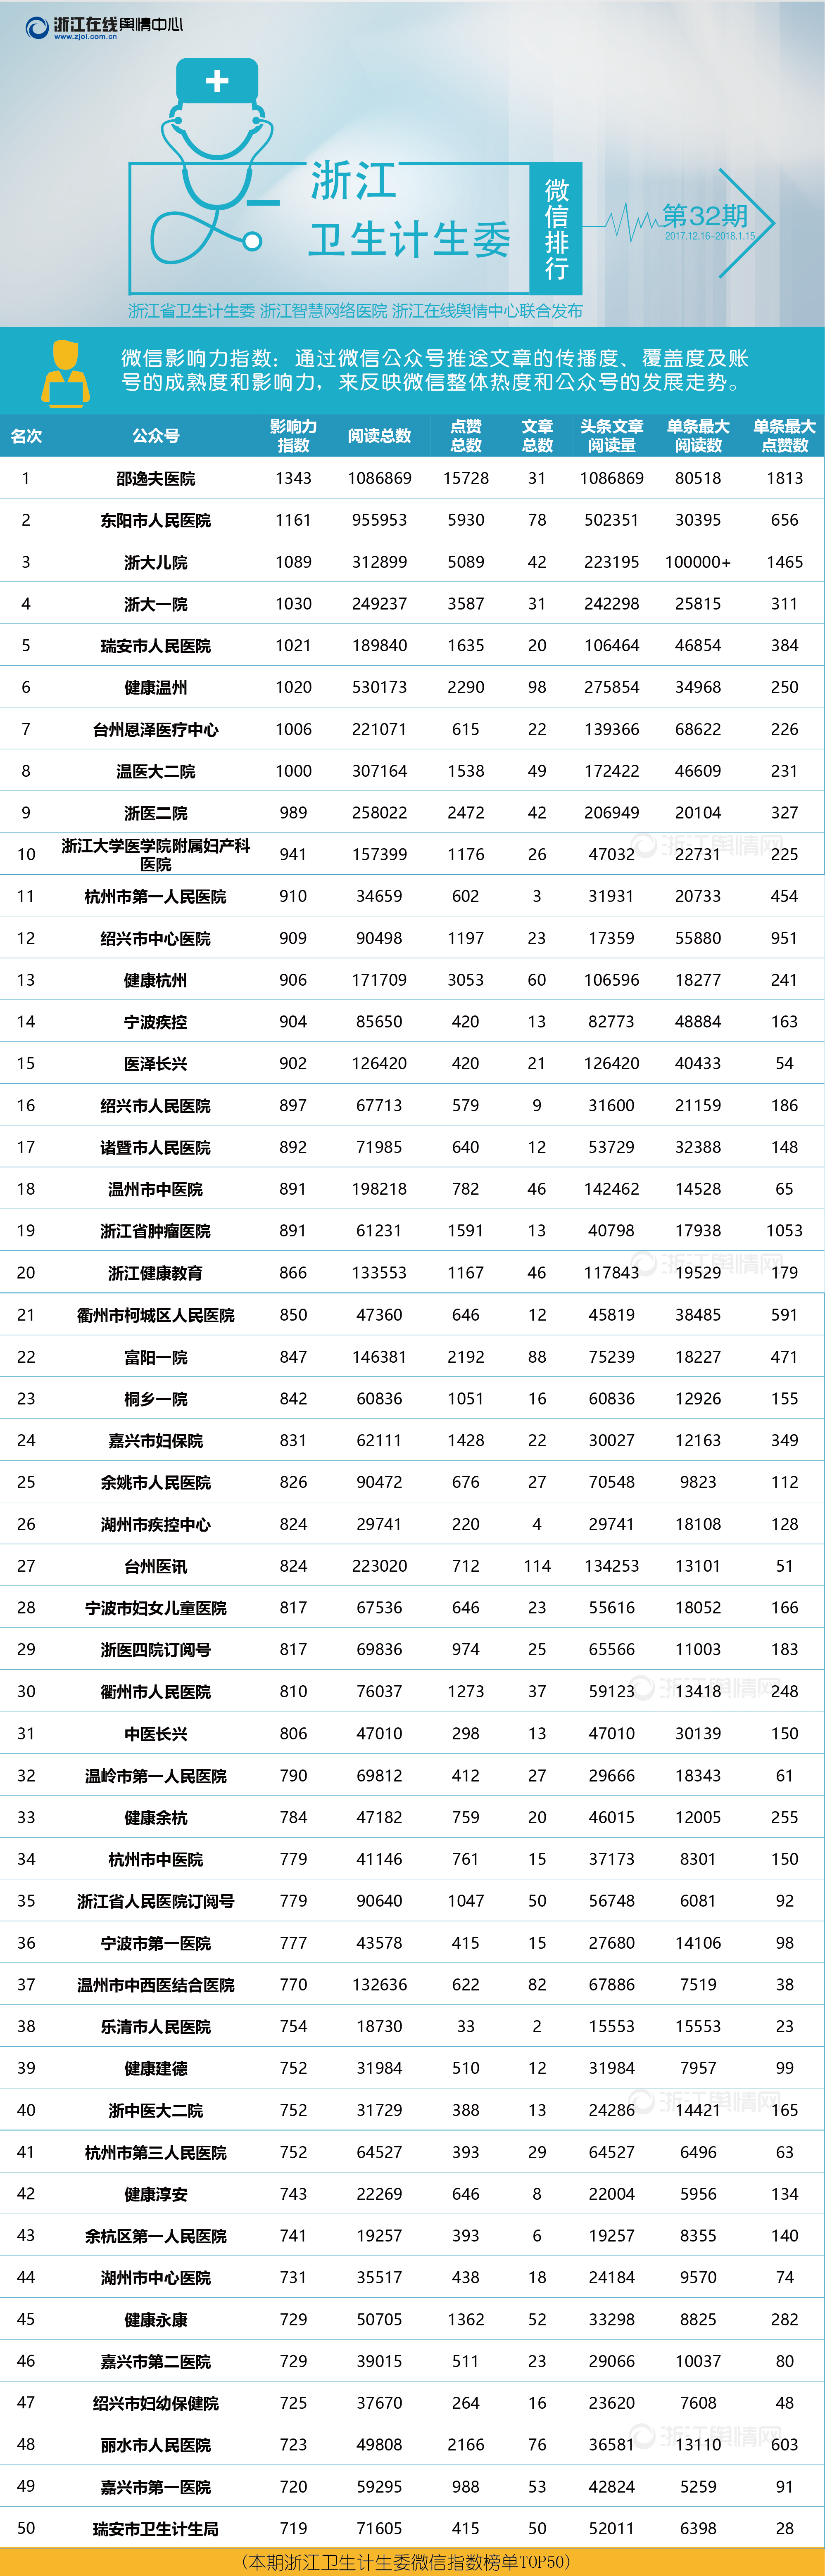 浙江卫生计生委系统微信排行榜（2017年12月16日-2018年1月15日）-排行-02.png